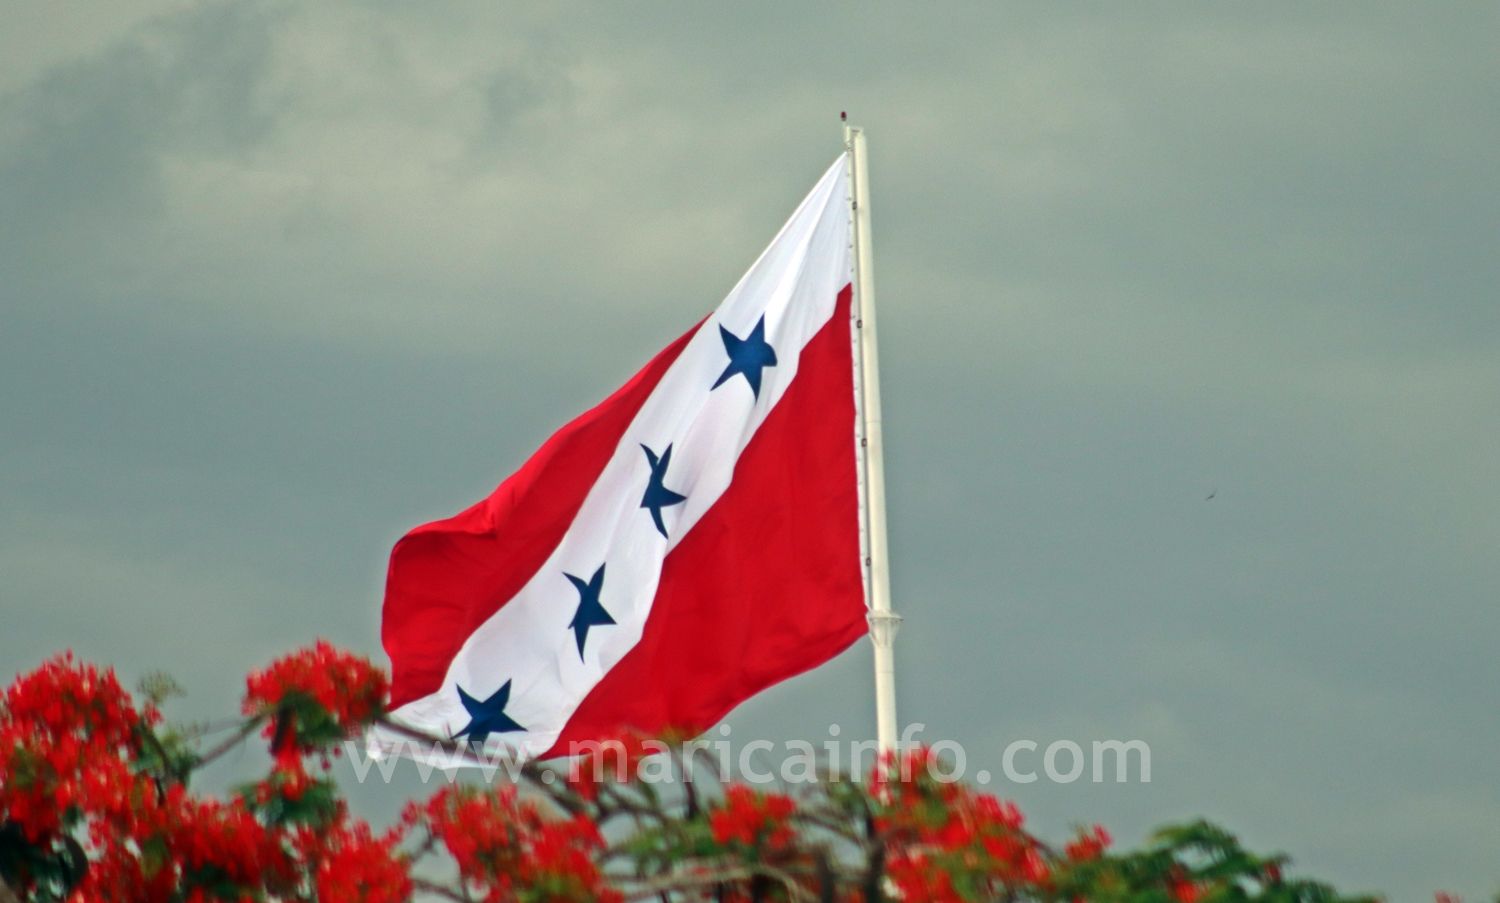 bandeira de marica rj tempo nublado foto maricainfo